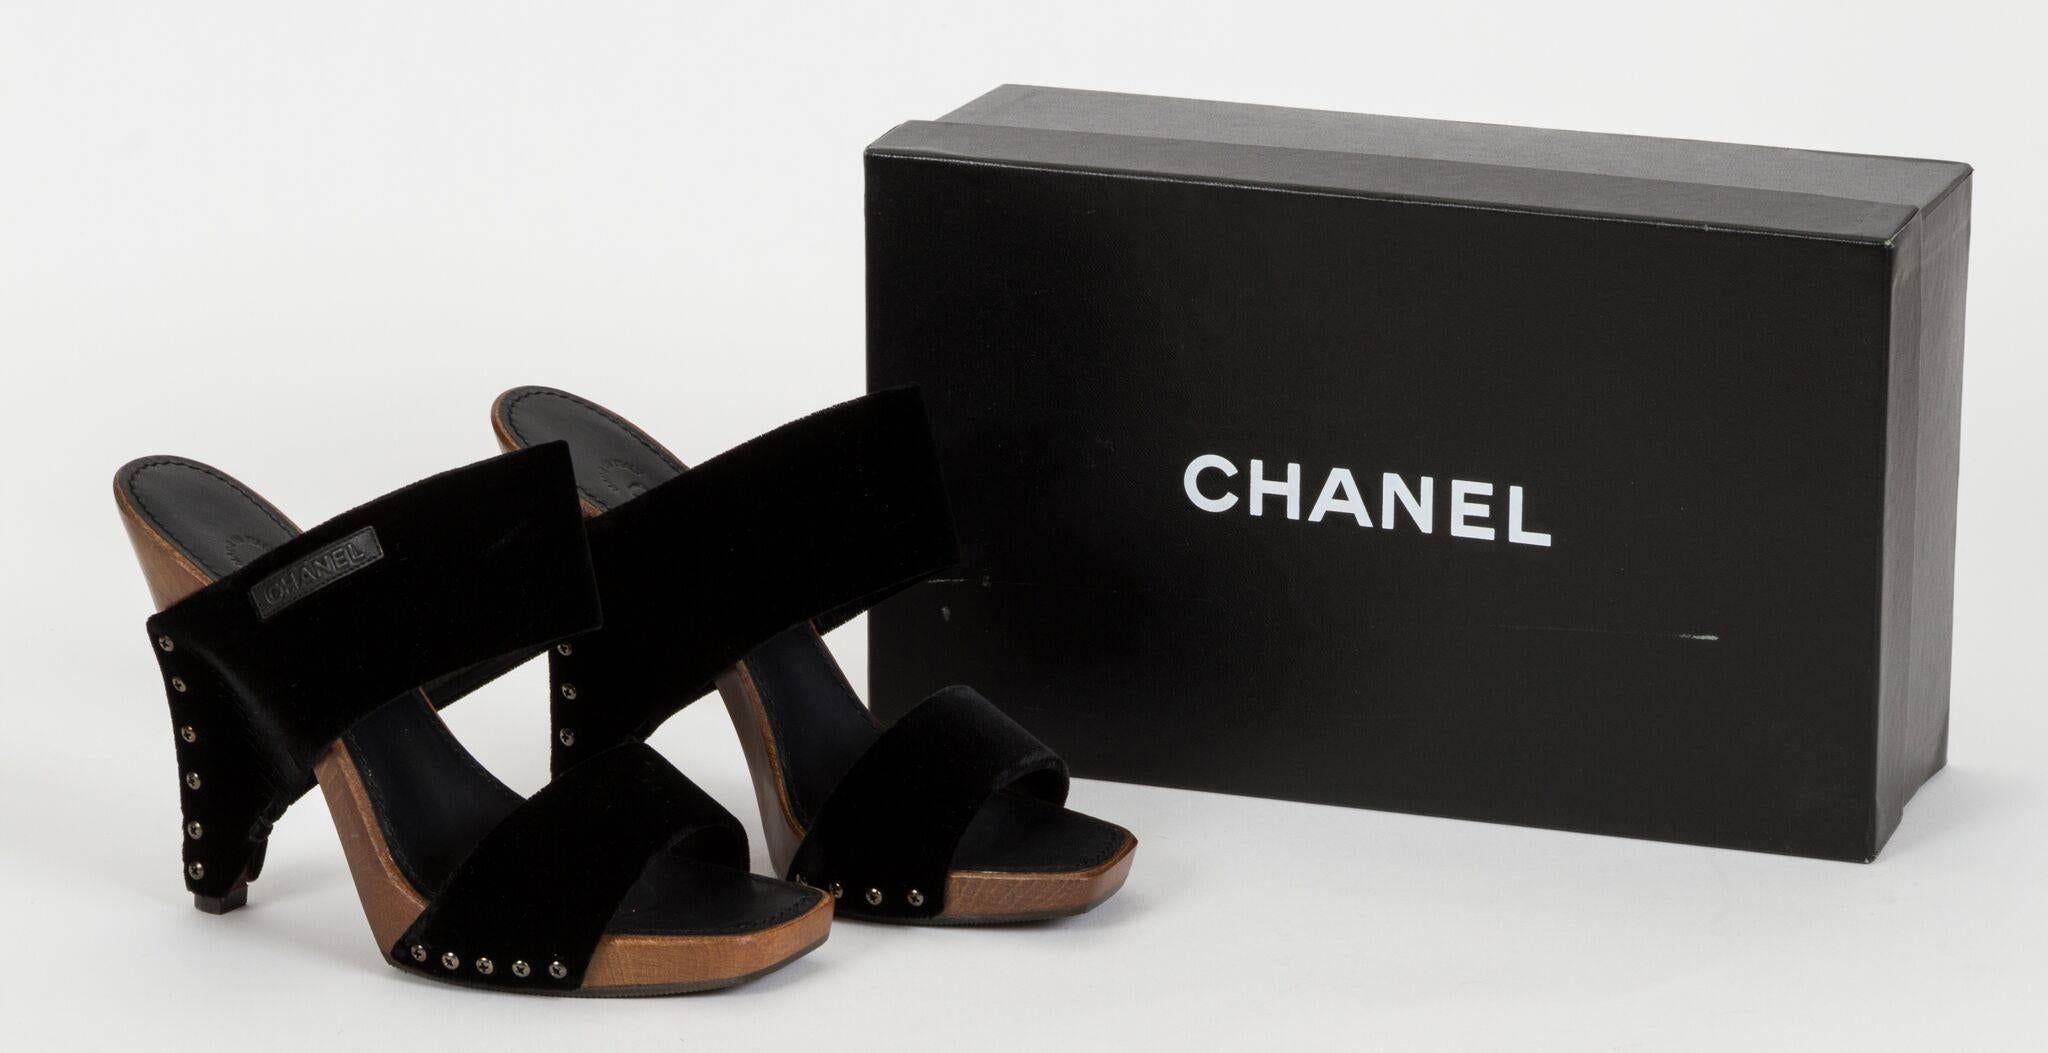 Chanel Pantoletten aus schwarzem Samt und Holz. Kollektion Frühjahr 2003. Französisch 37,5, amerikanische Größe 7. Brandneu in original Chanel Box.